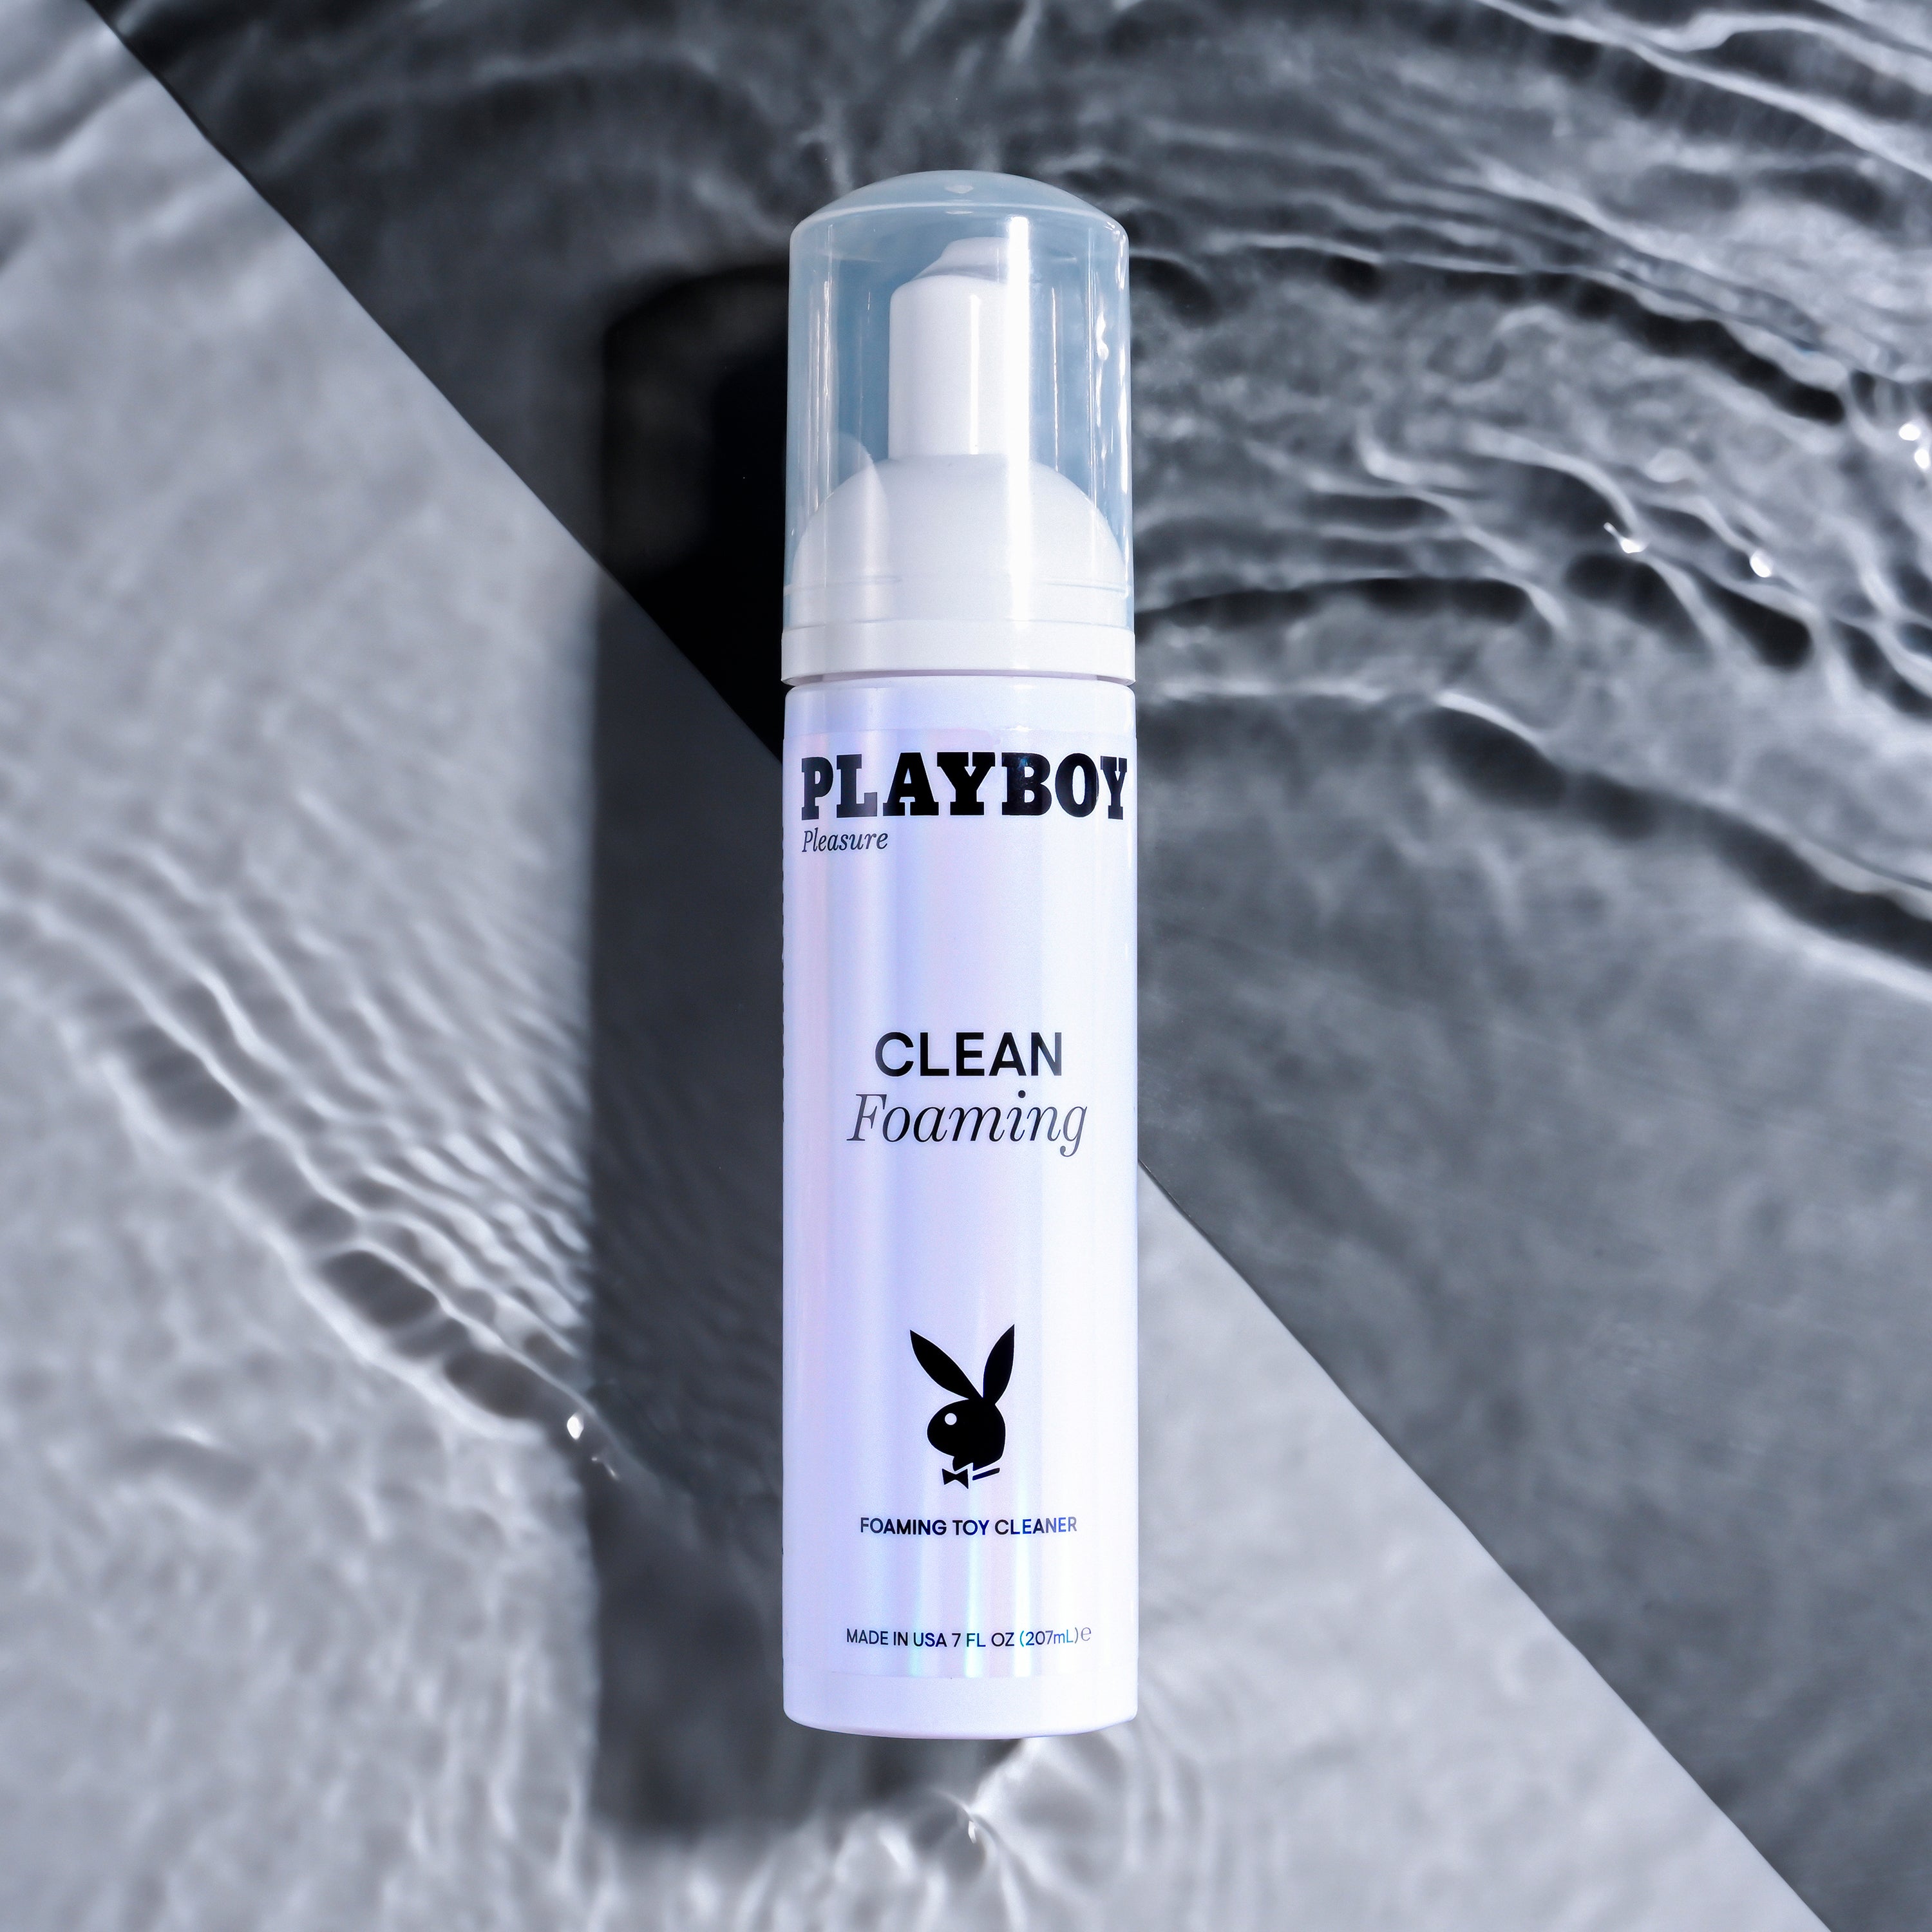 Playboy Pleasure Clean Foaming Toy Cleaner - 7 Oz